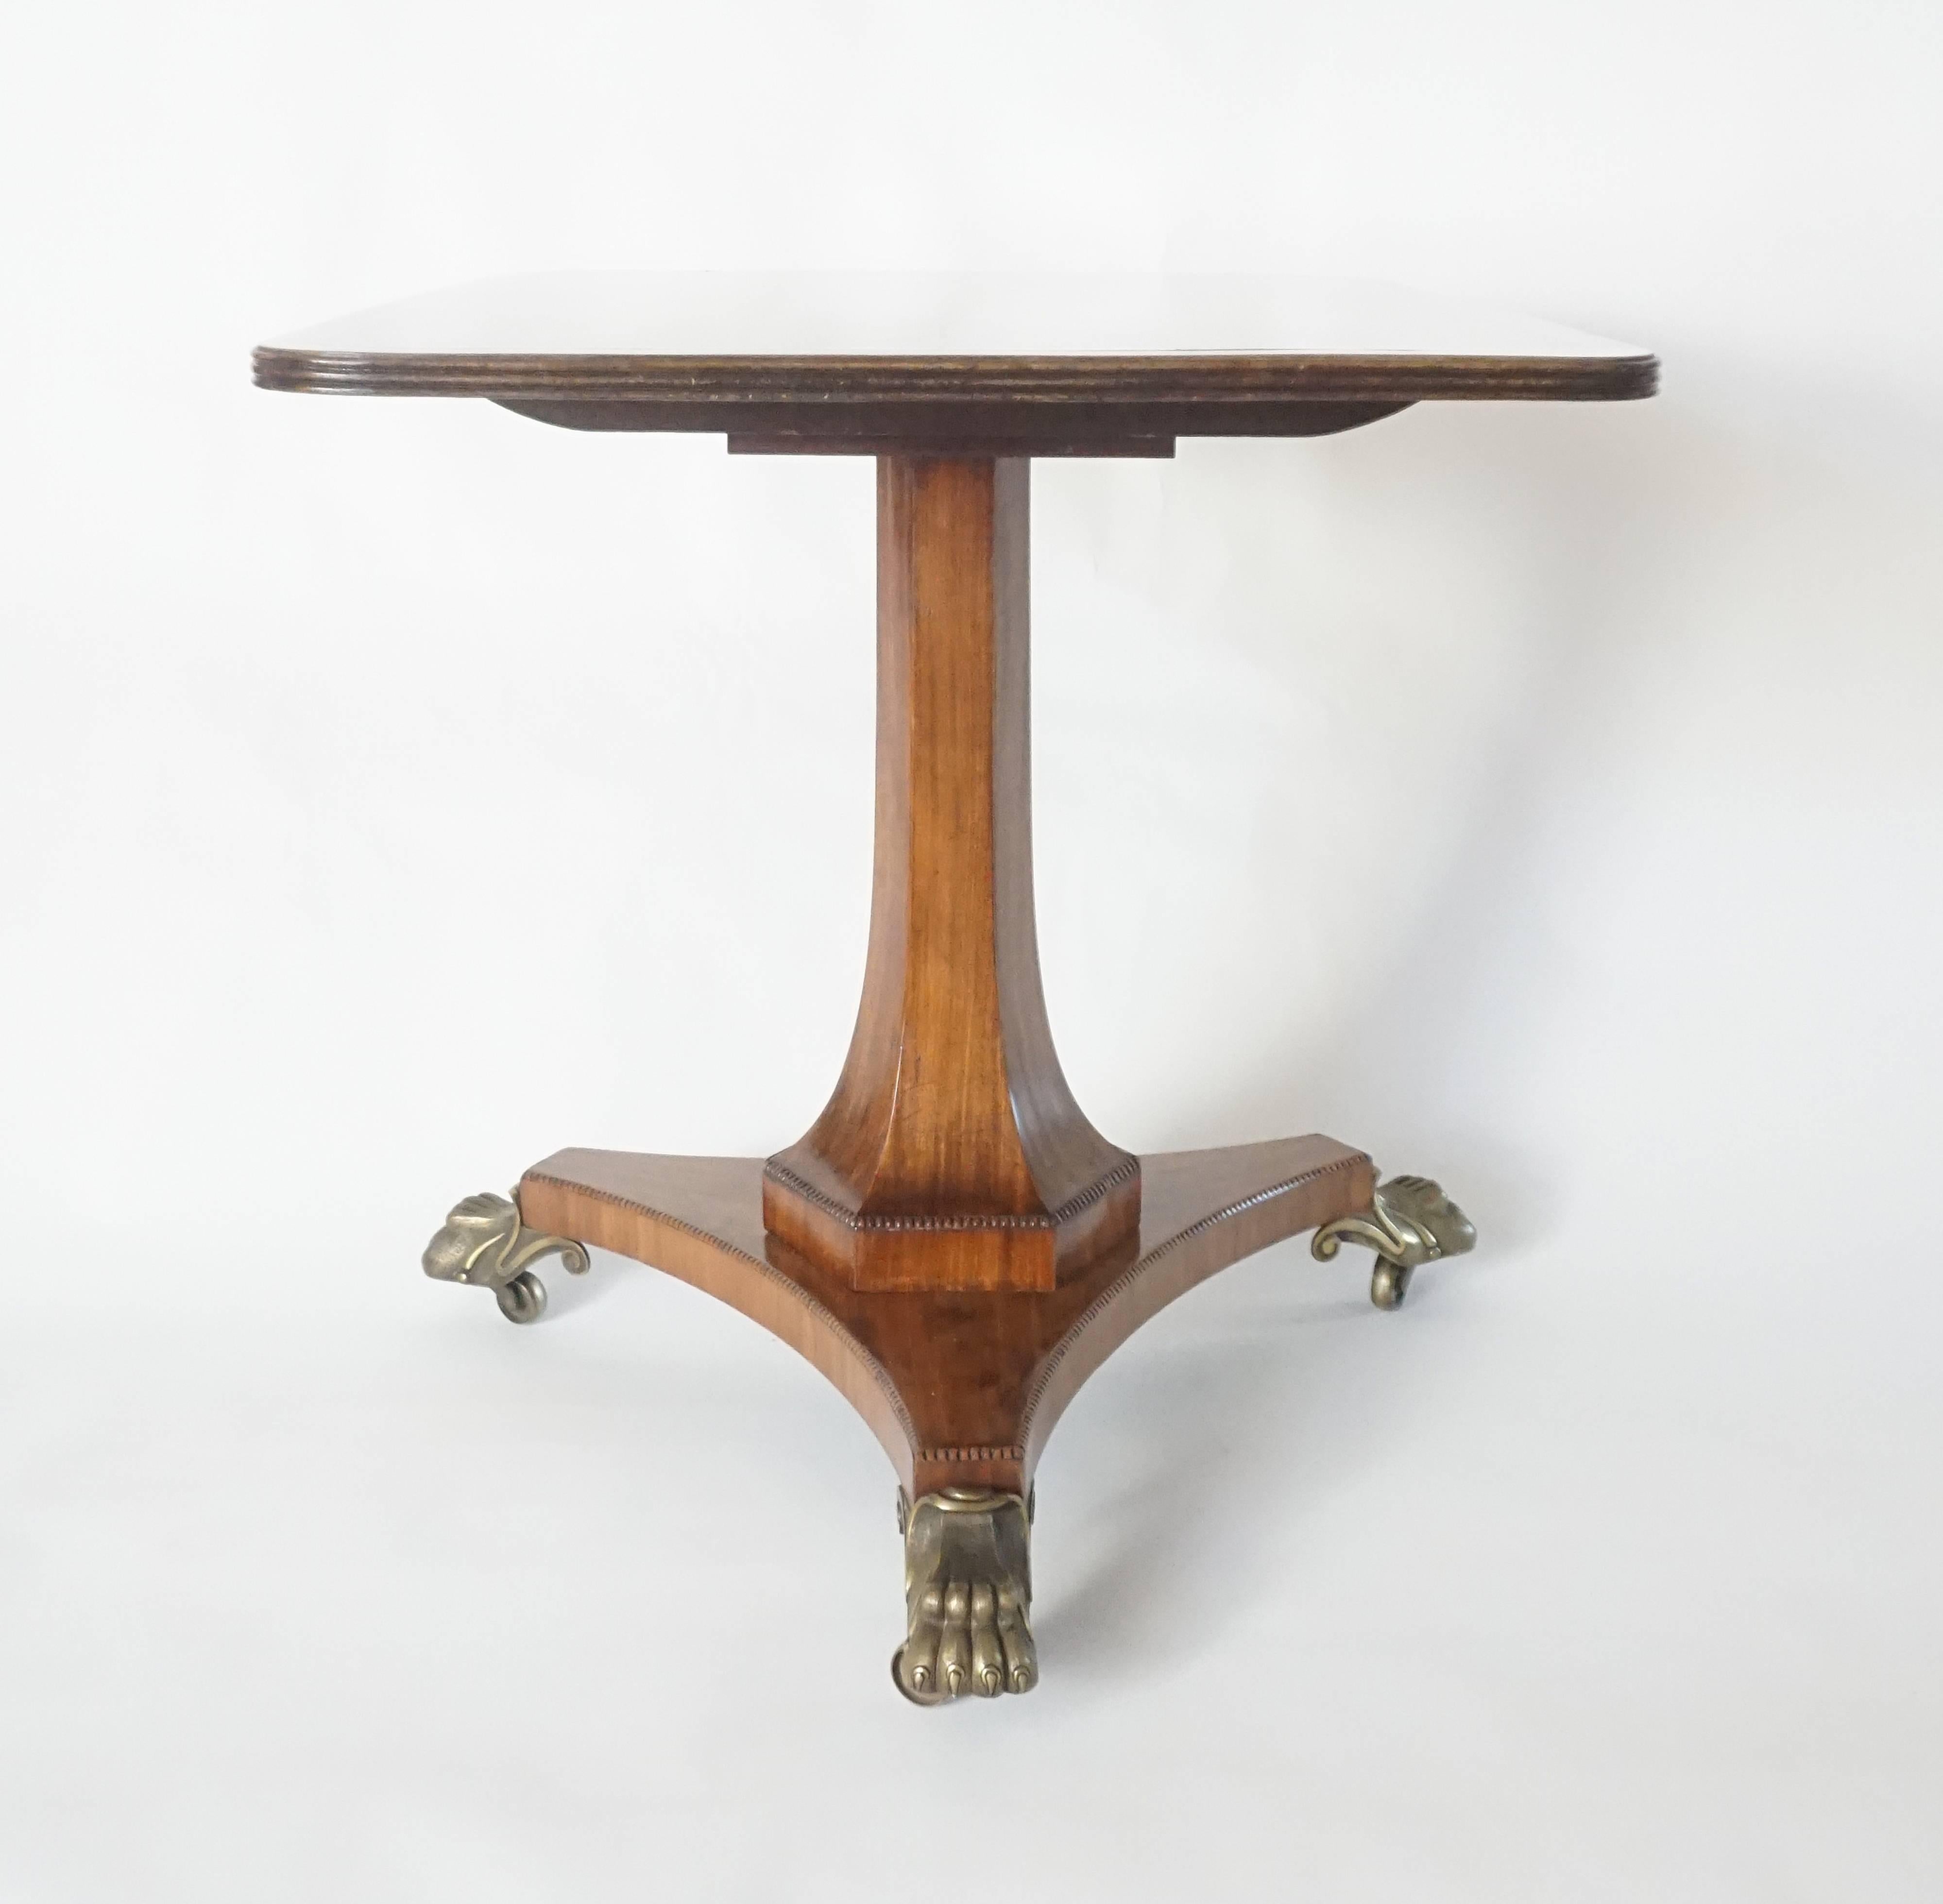 Exceptionnelle table à plateau basculant en acajou, d'époque Régence anglaise, vers 1820, de forme inhabituelle, avec un plateau rectangulaire en bois massif avec une bordure en laiton incrusté de lignes et un bord cannelé, sur un support à